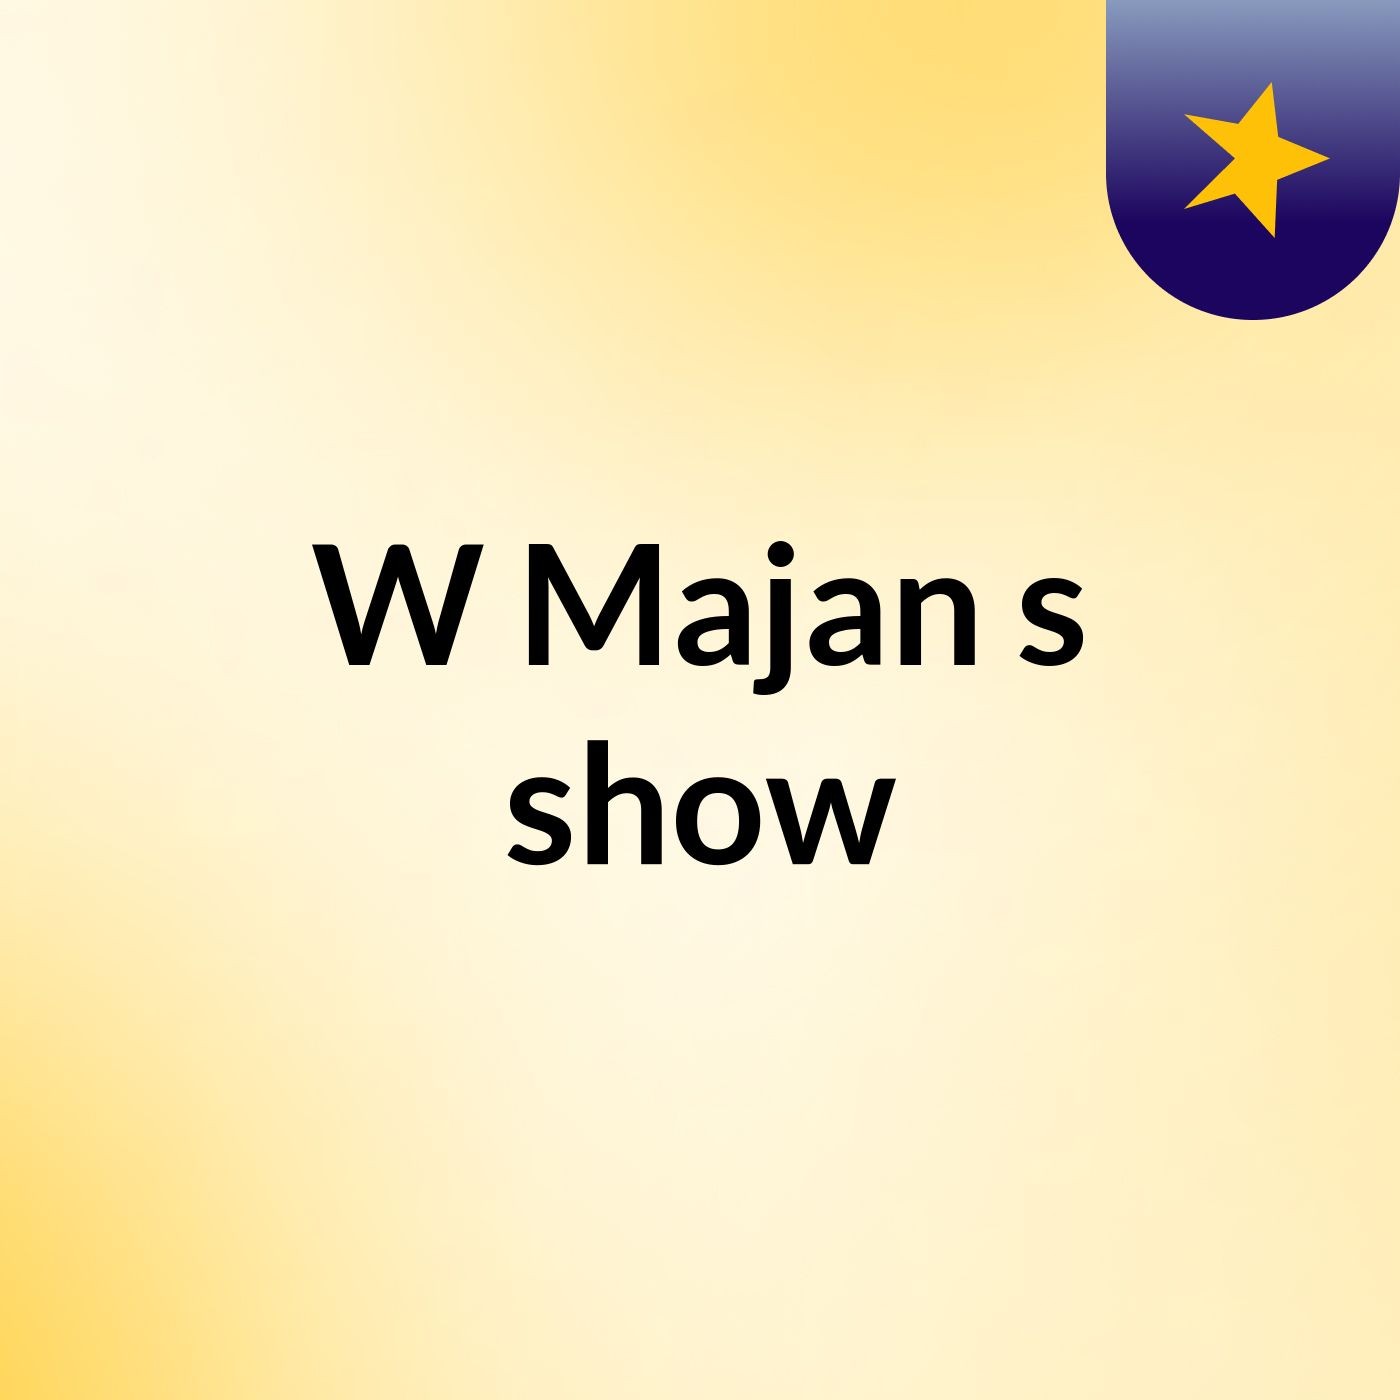 W Majan's show